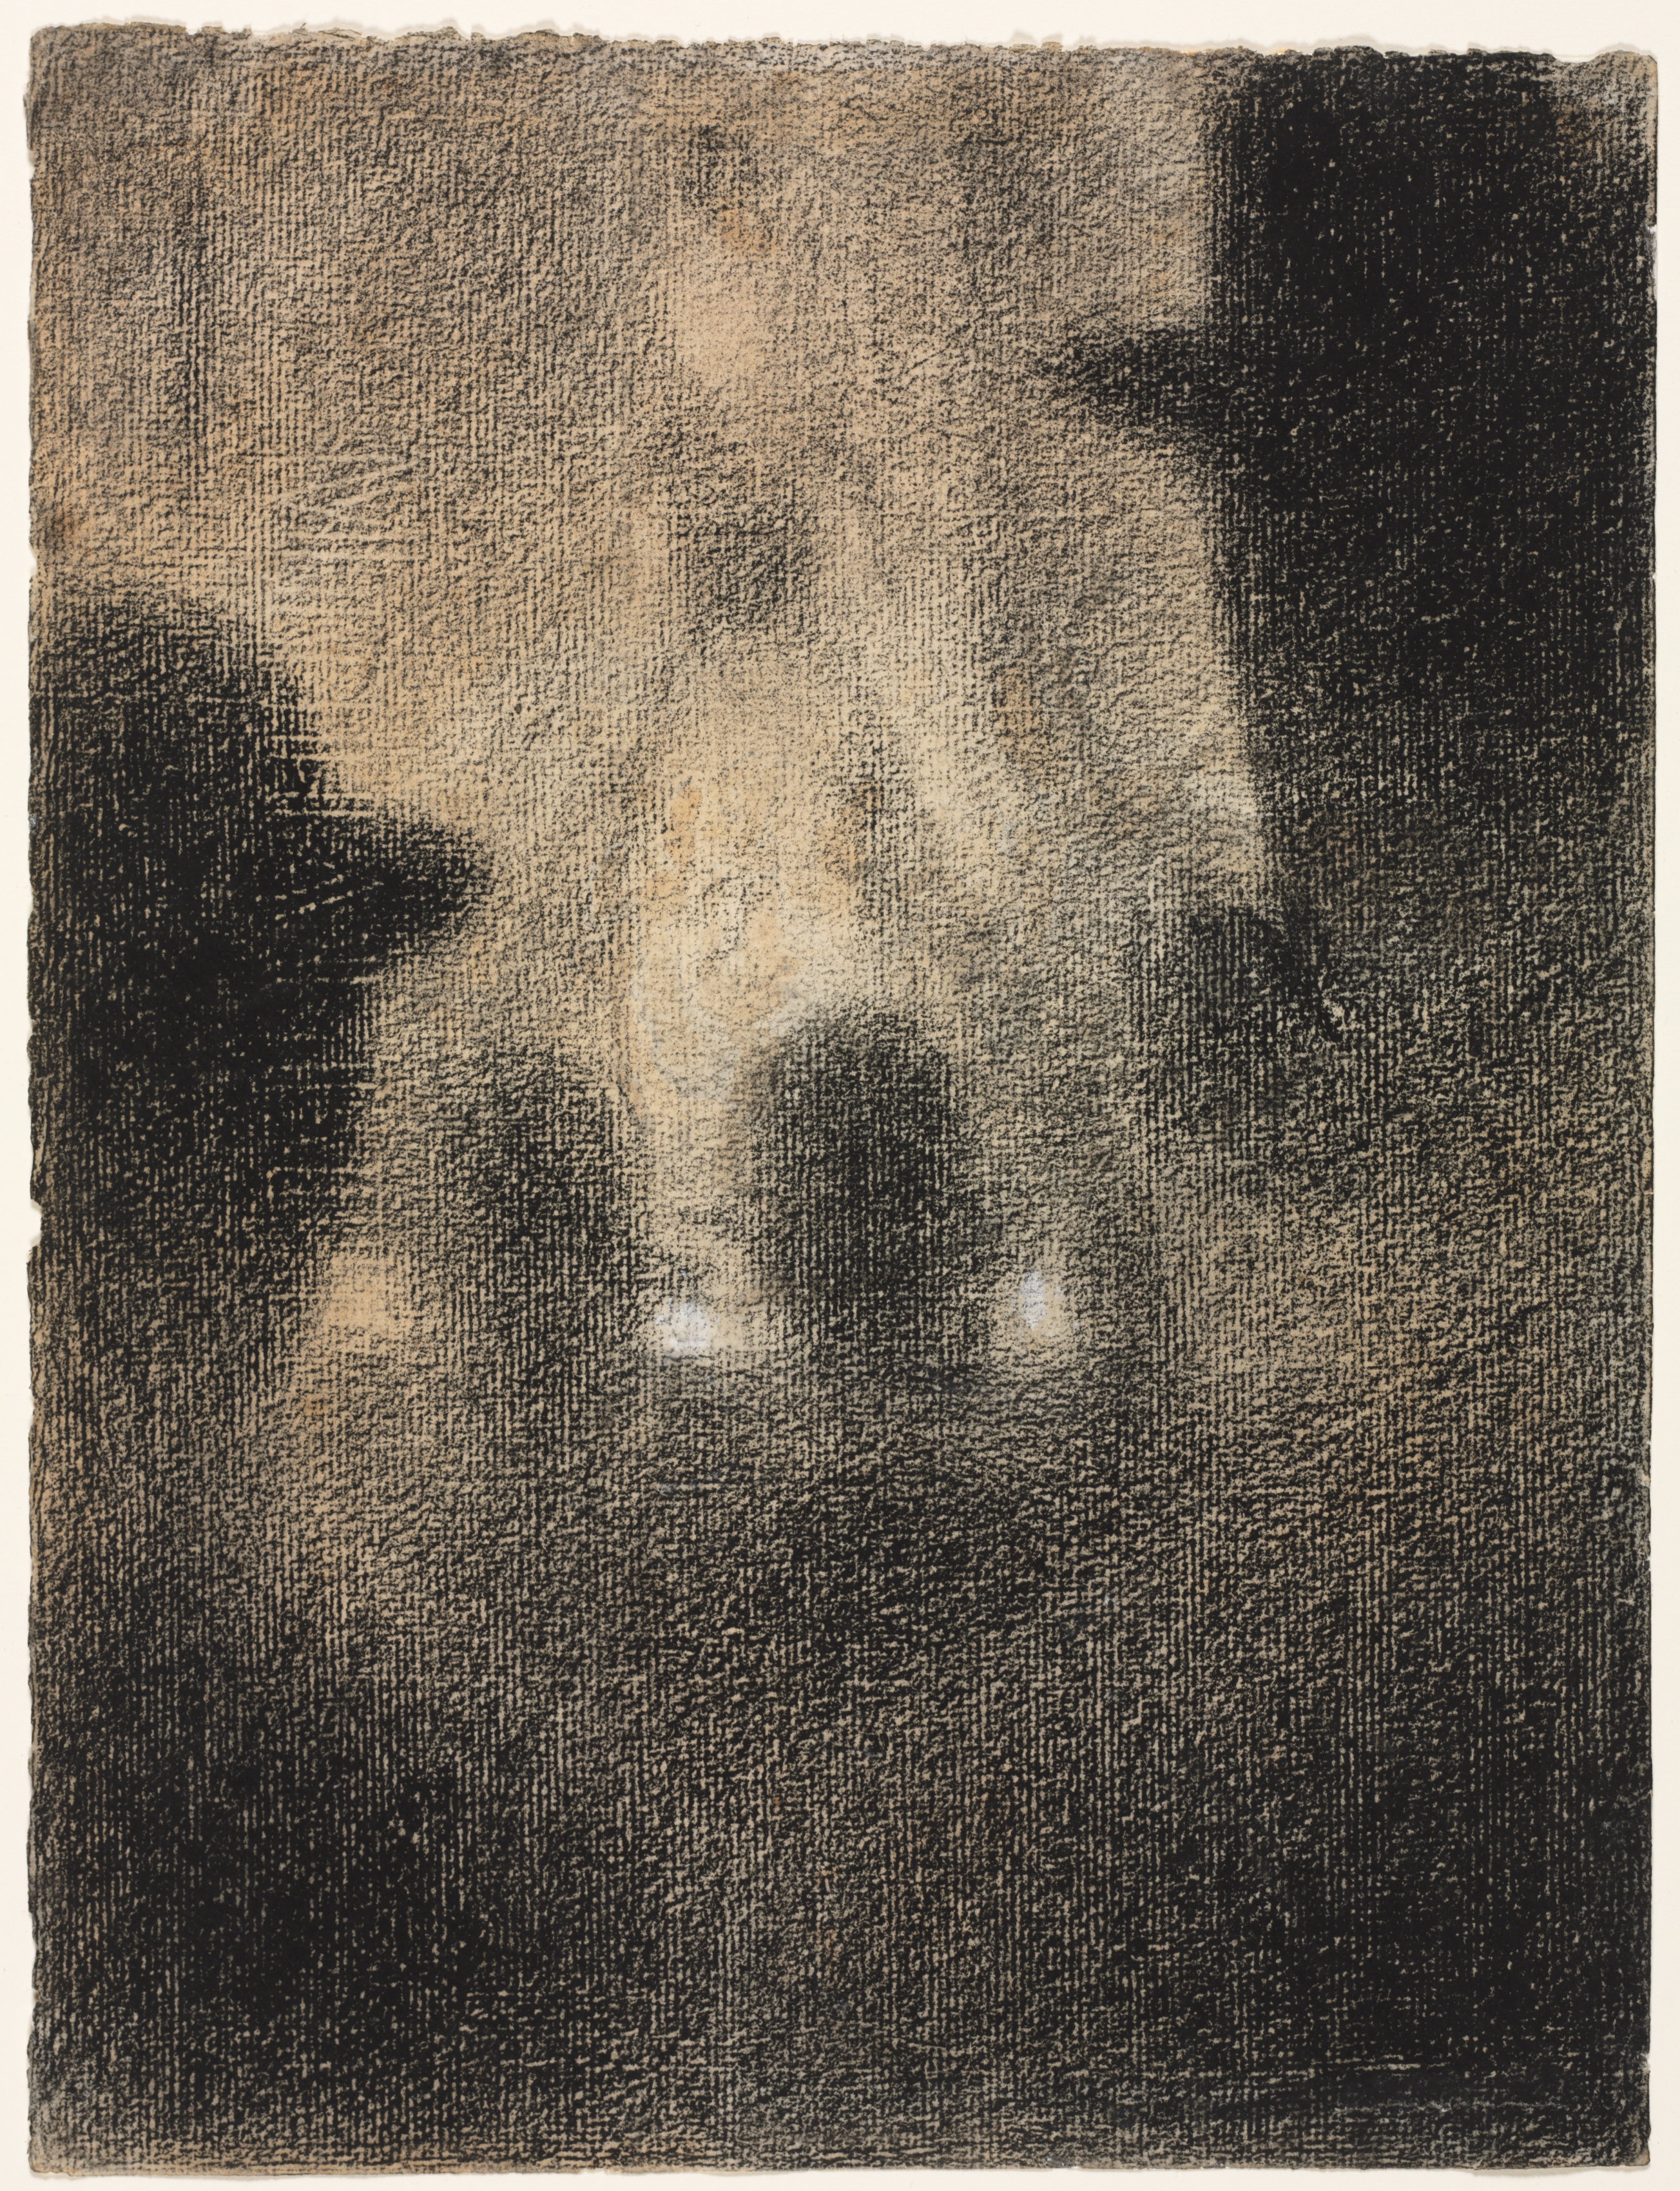 حفلة مقهى by Georges Seurat - 1887-88 م - 31.4 في 23.6 سم 